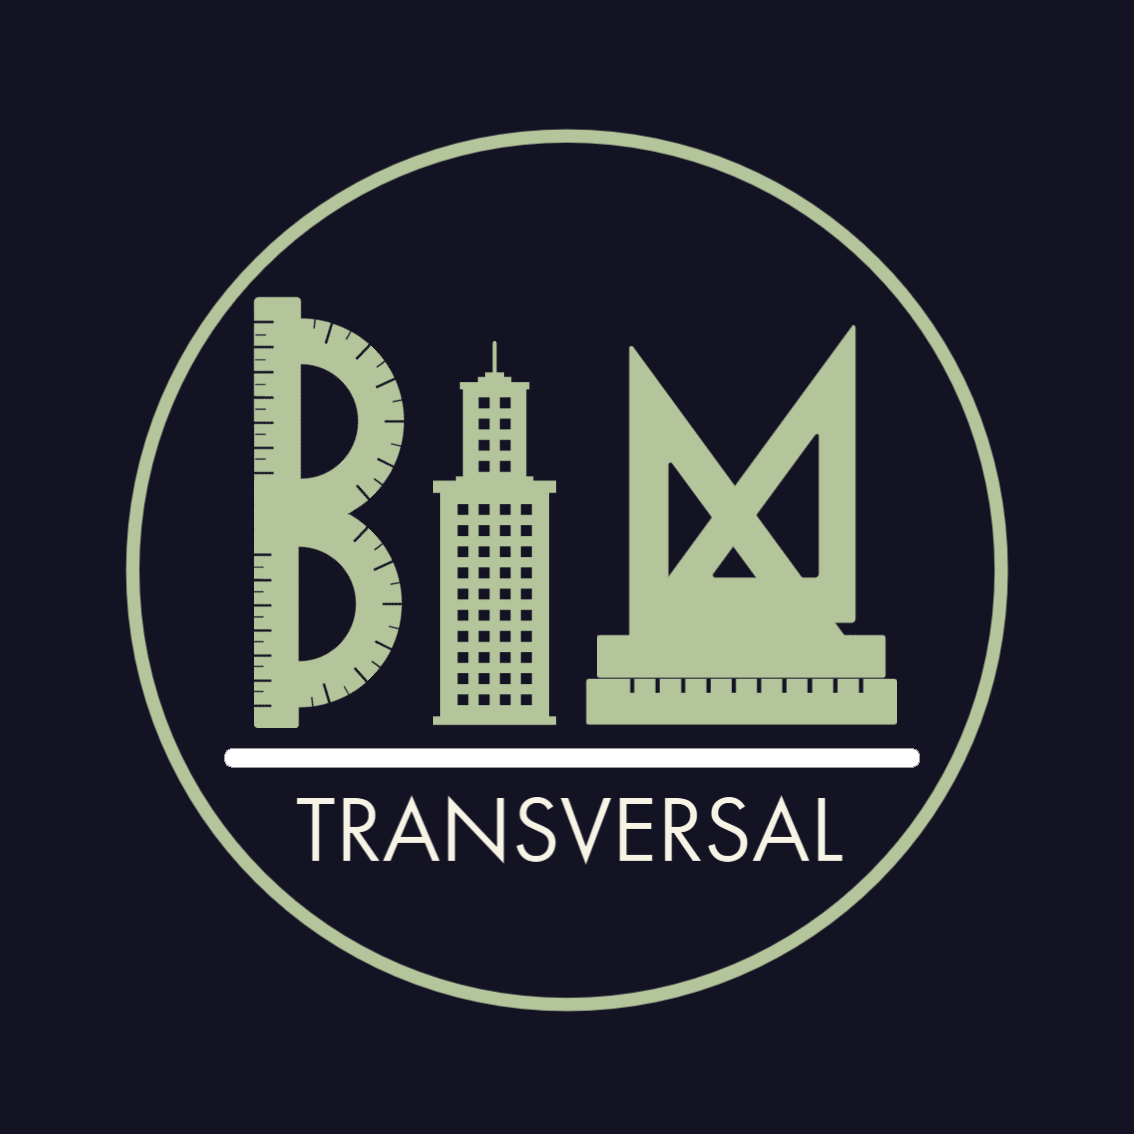 Transversal BIM for Higher Education logo